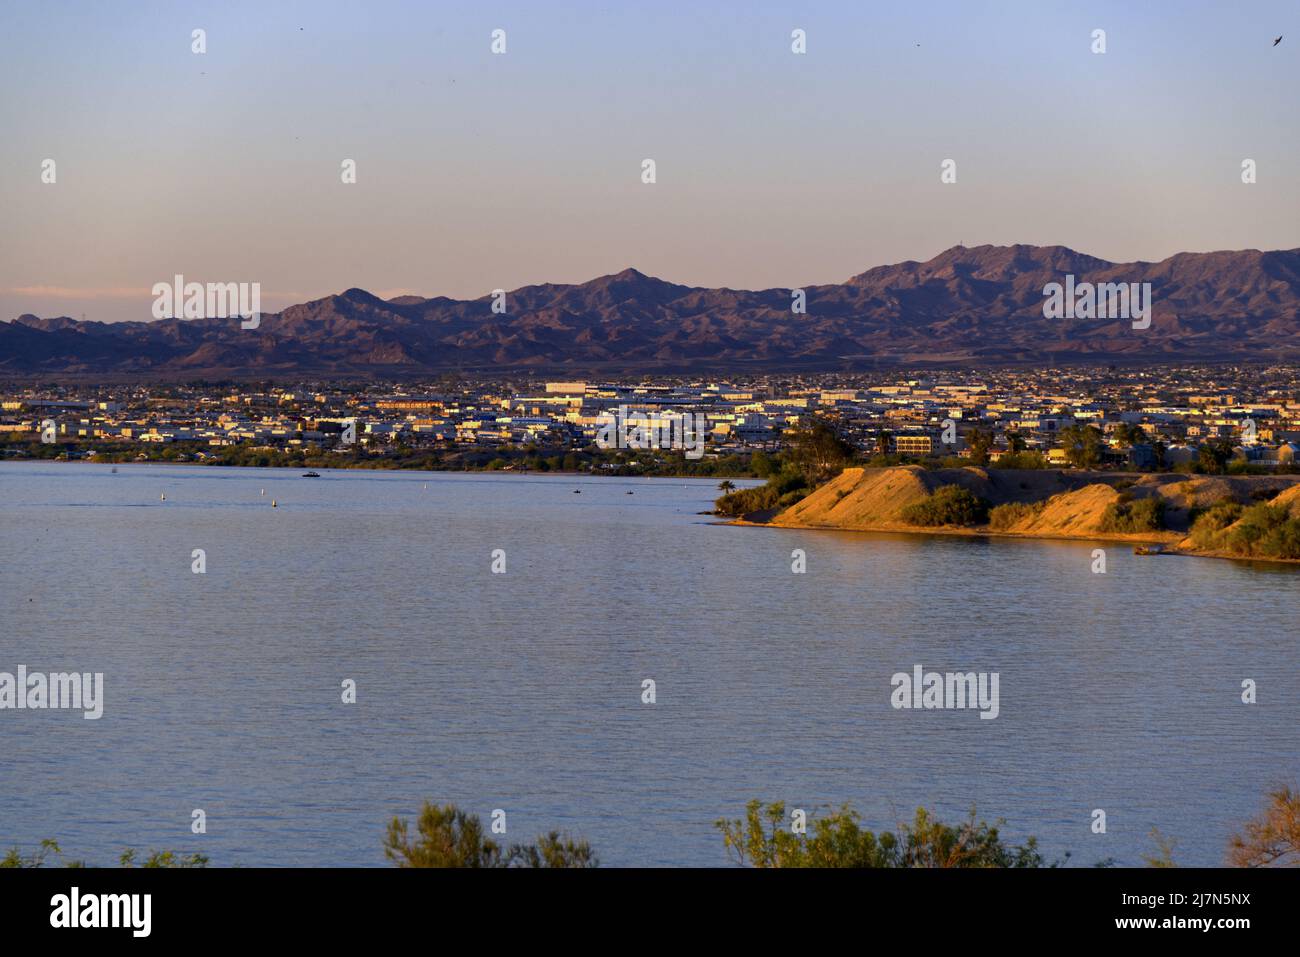 Panorama de la ciudad del lago Havasu Foto de stock